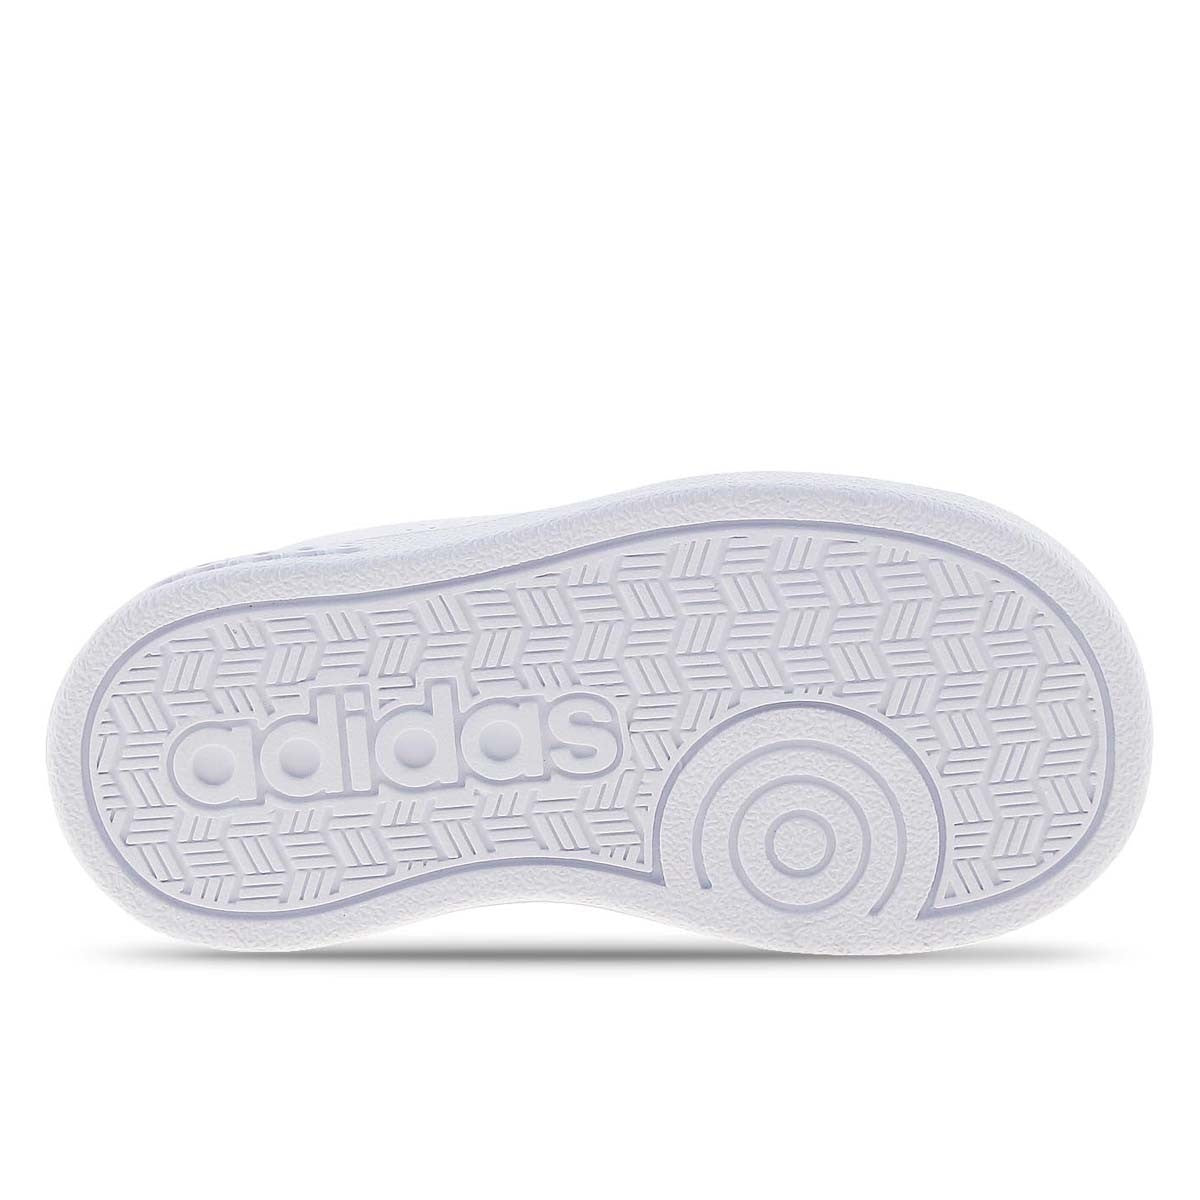 Adidas VS aDV CL sneakers da bambina BB9980 white